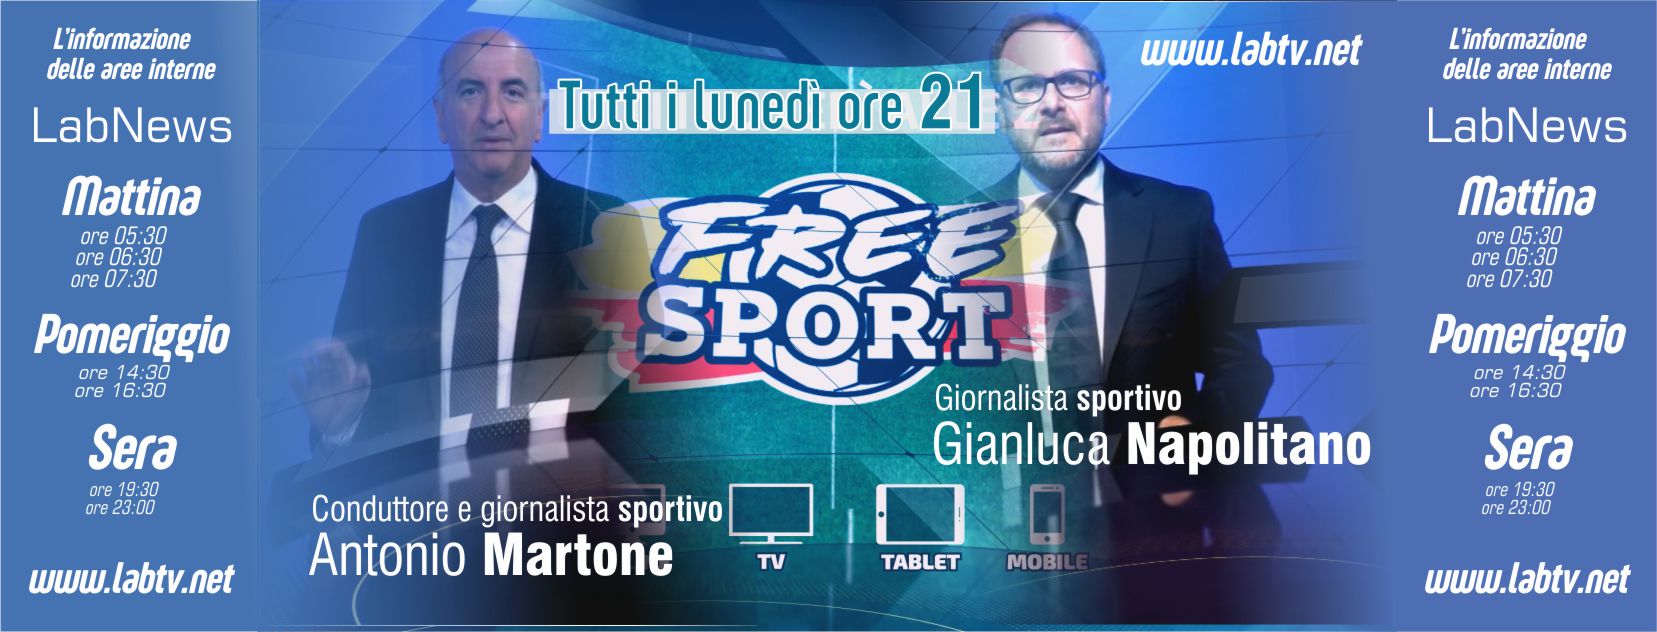 Benevento| L’attesa è finita: questa sera parte la trasmissione “Free Sport”